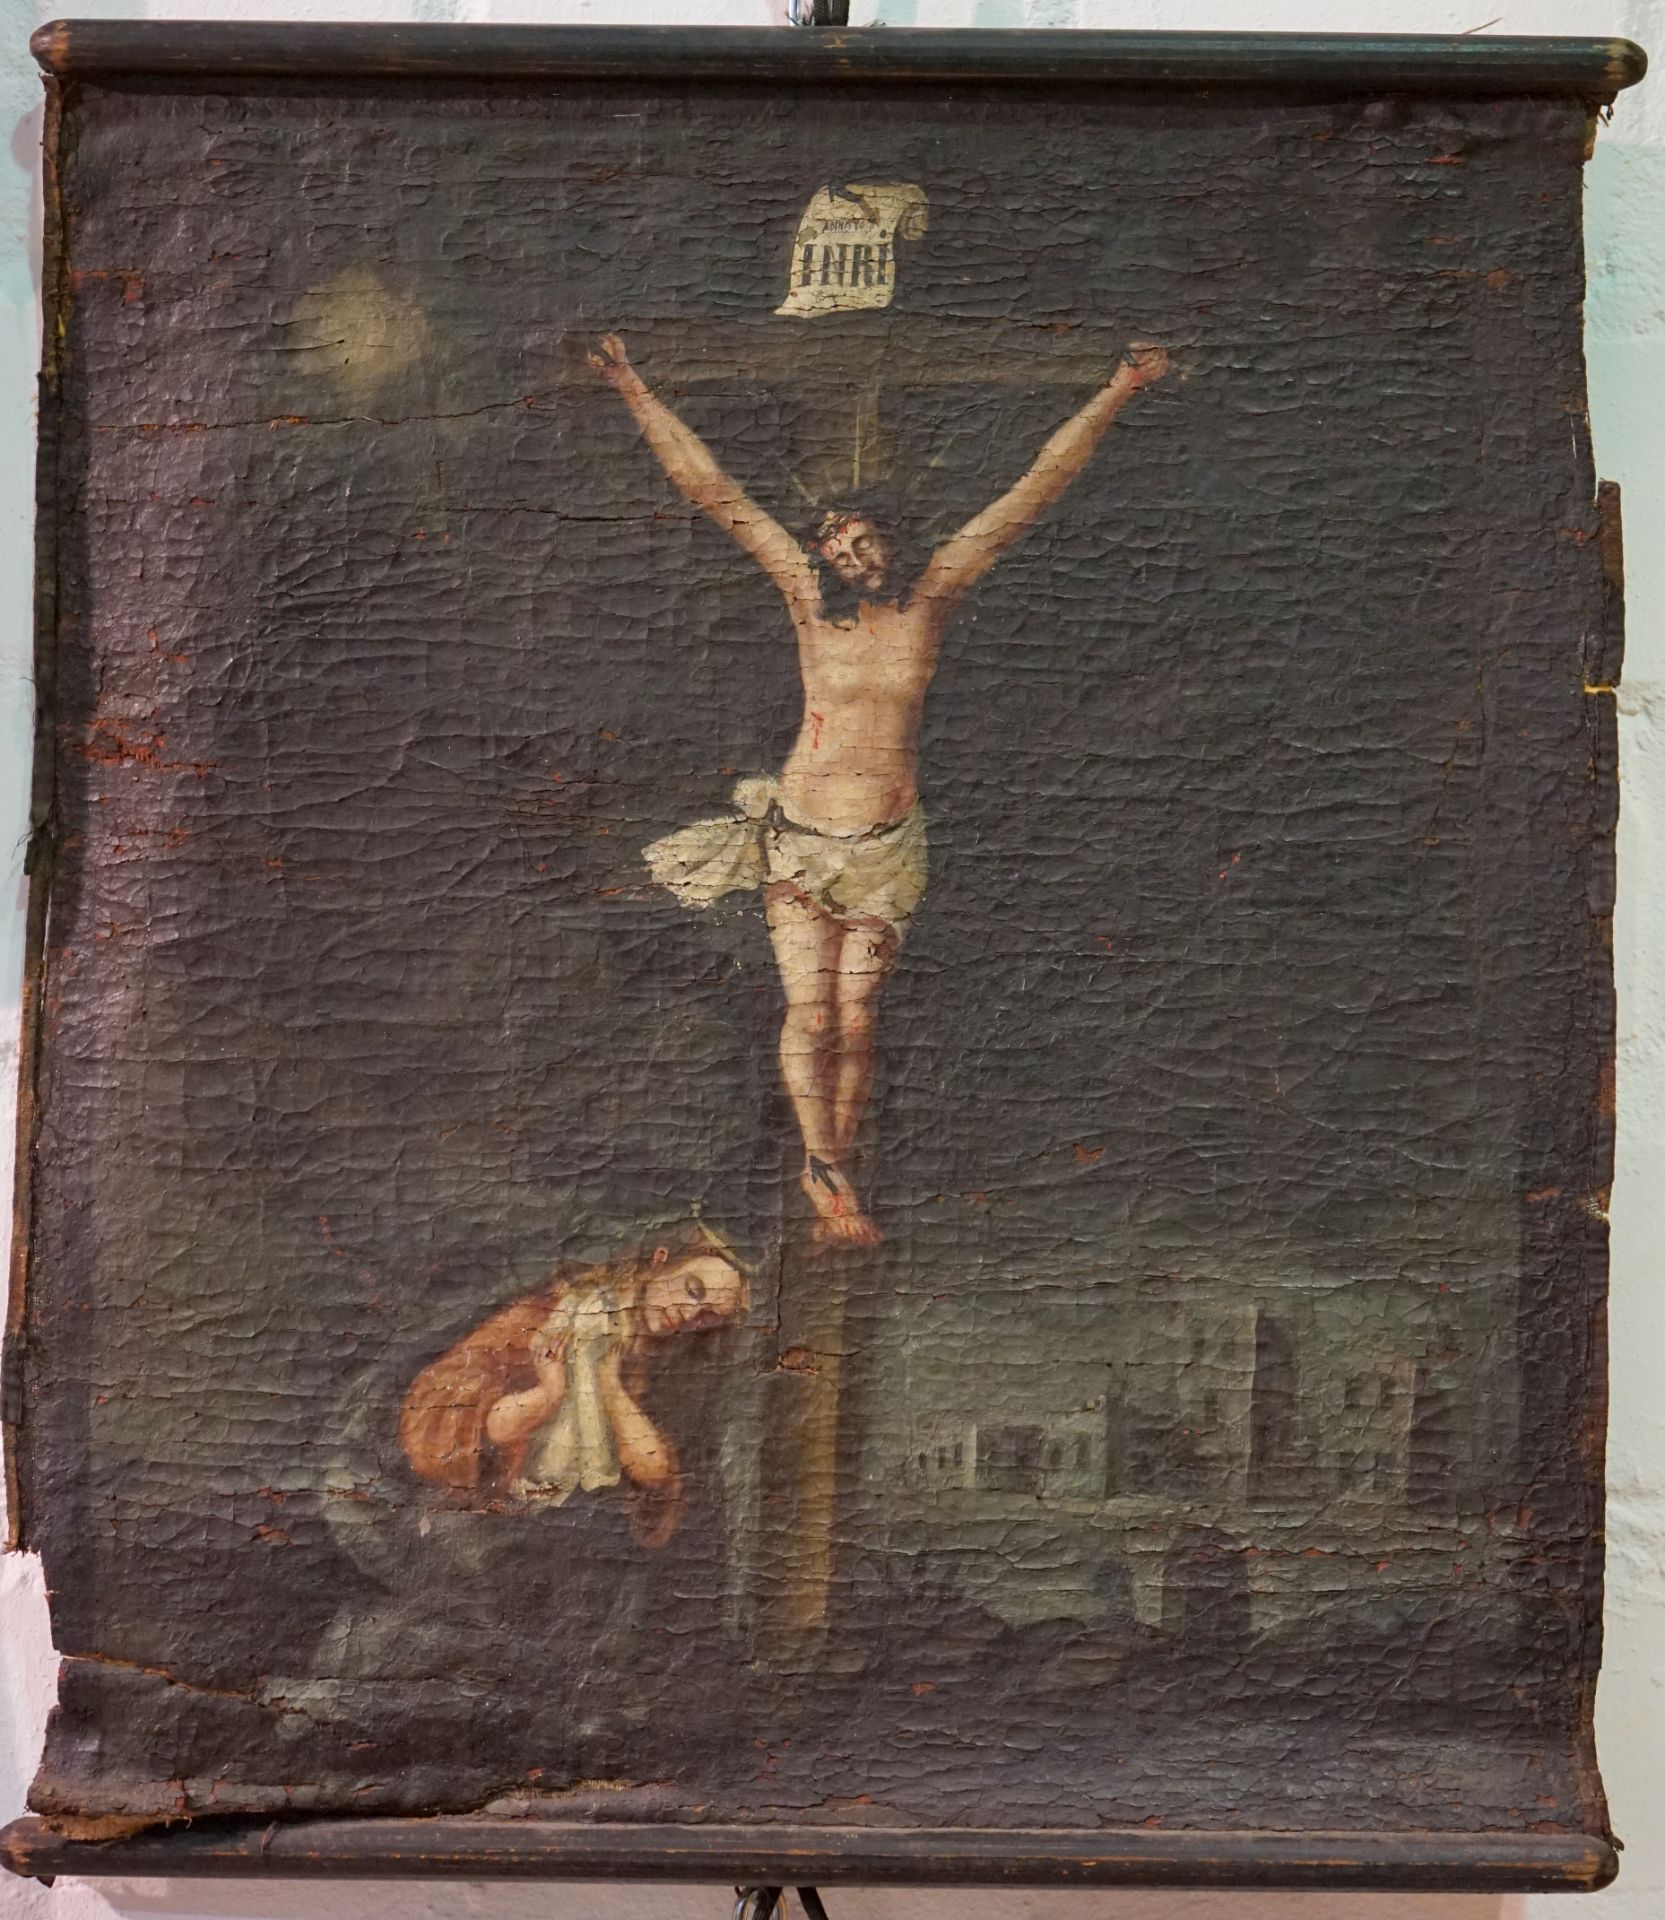 Bildrolle mit Darstellung Christus am Kreuze, 19. Jhd.,dunkler Hintergrund mit Stadtkulisse im